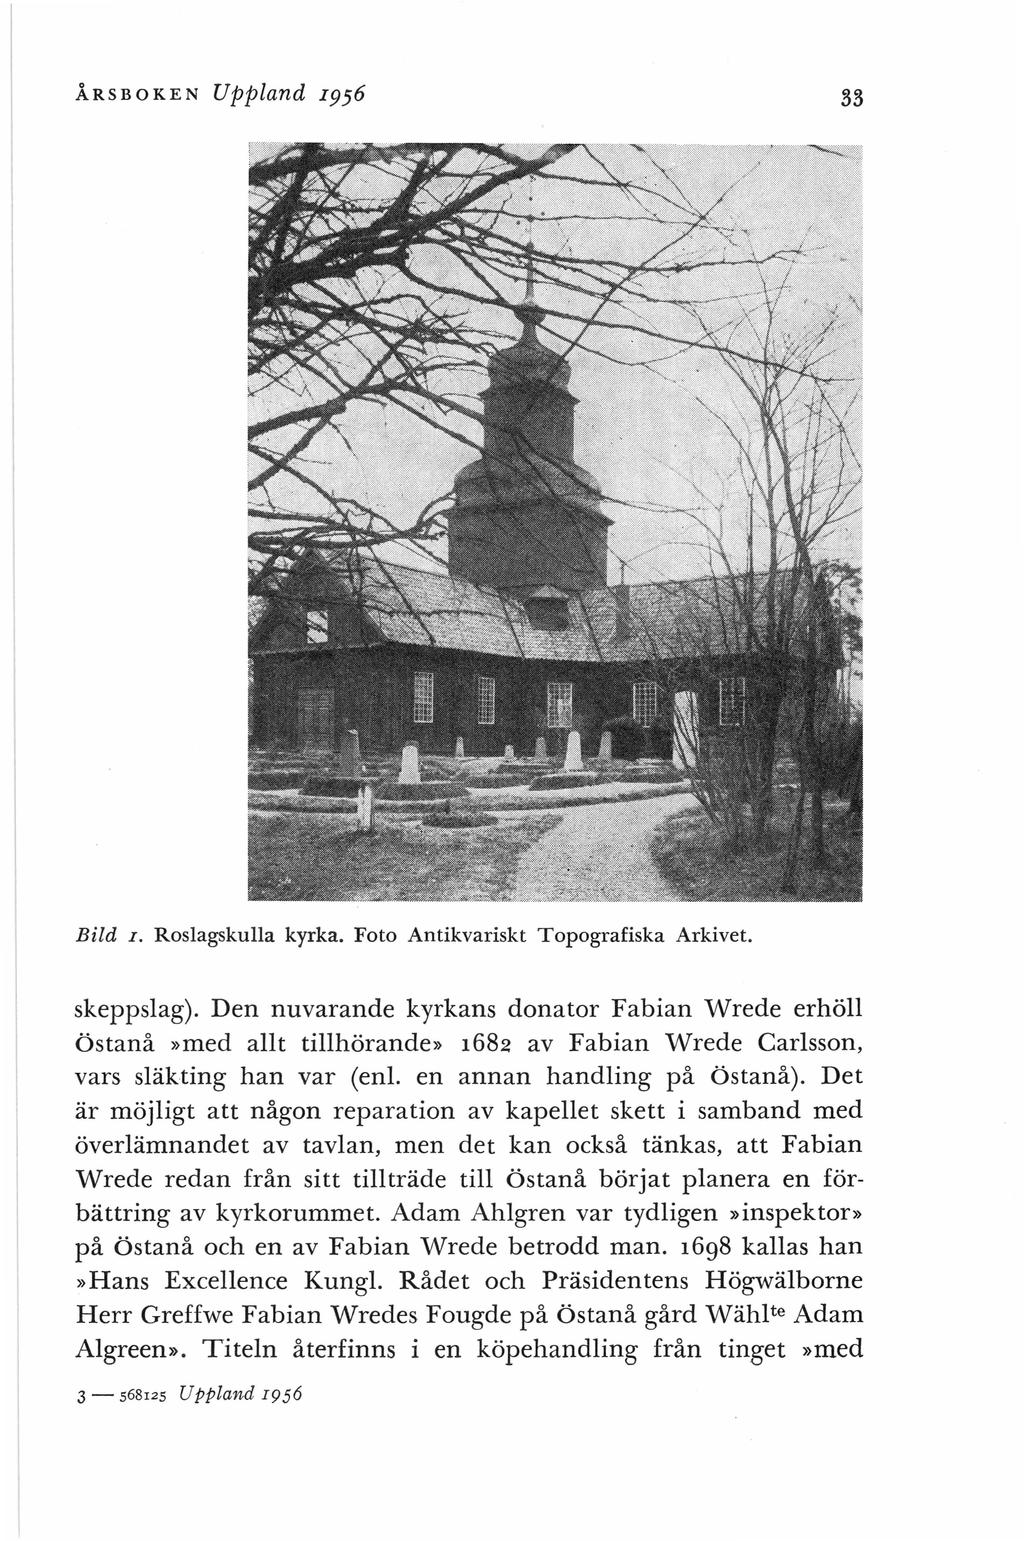 ÅRSBOKEN Bild I. Uppland 1956 33 Roslagskulla kyrka. Foto Antikvariskt Topografiska Arkivet. skeppslag).